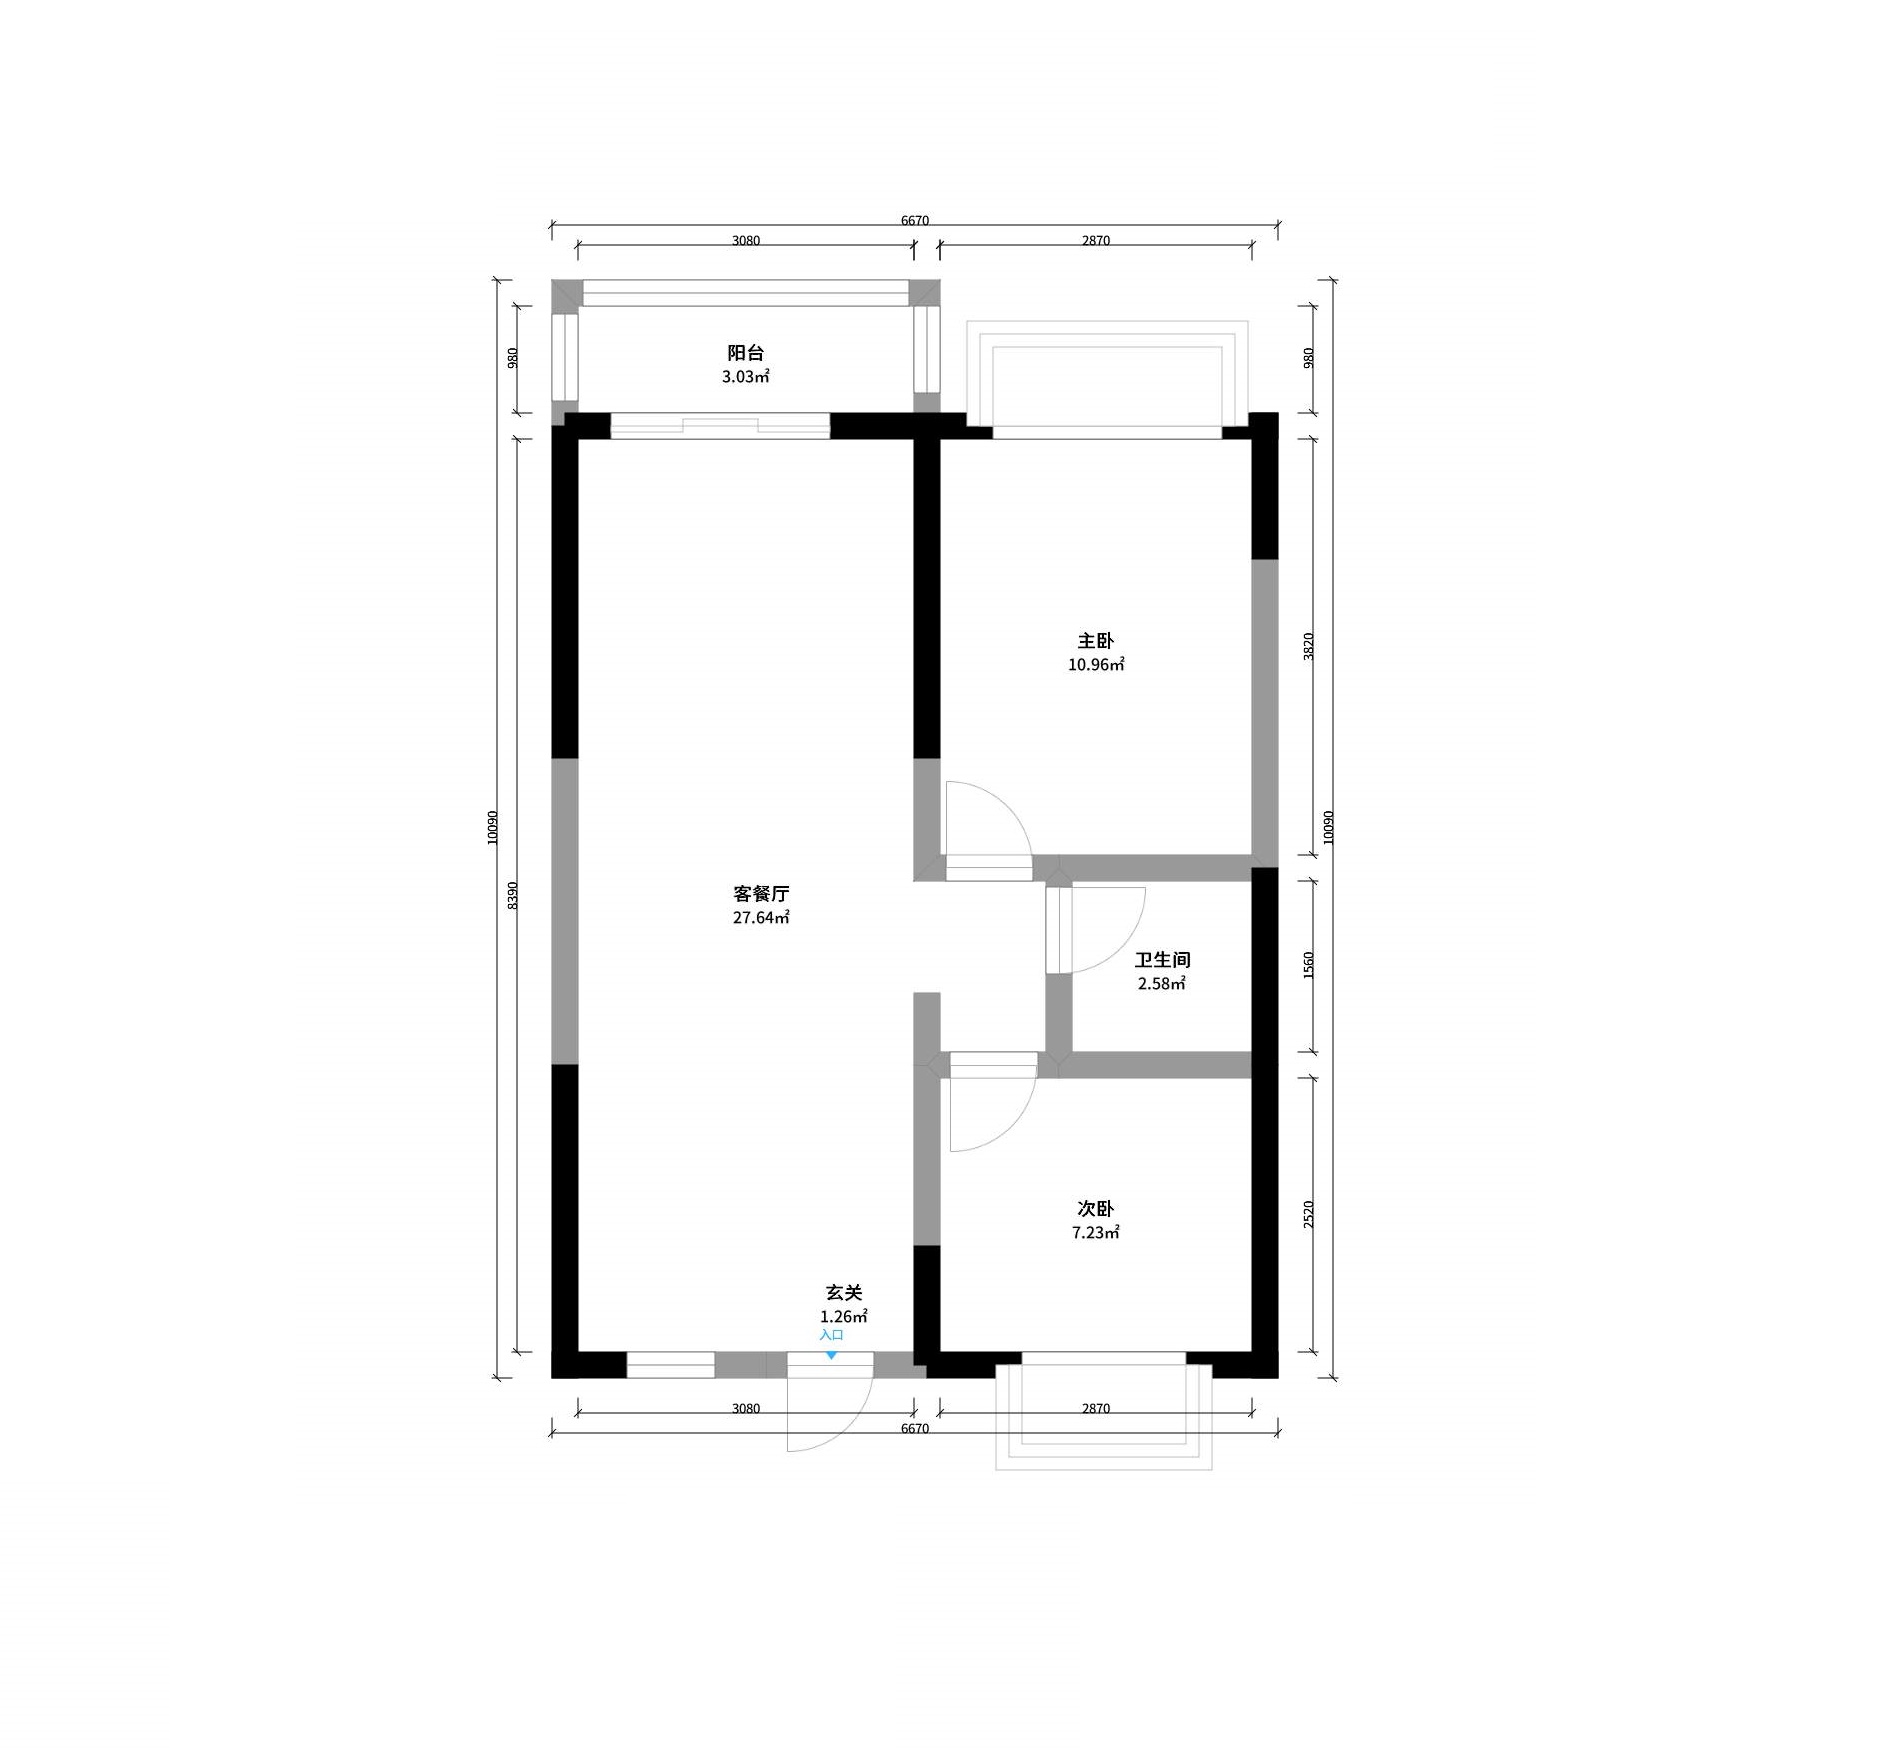 平面设计图:本期案例:60㎡两室一厅,儿童房仅7㎡却像个城堡!